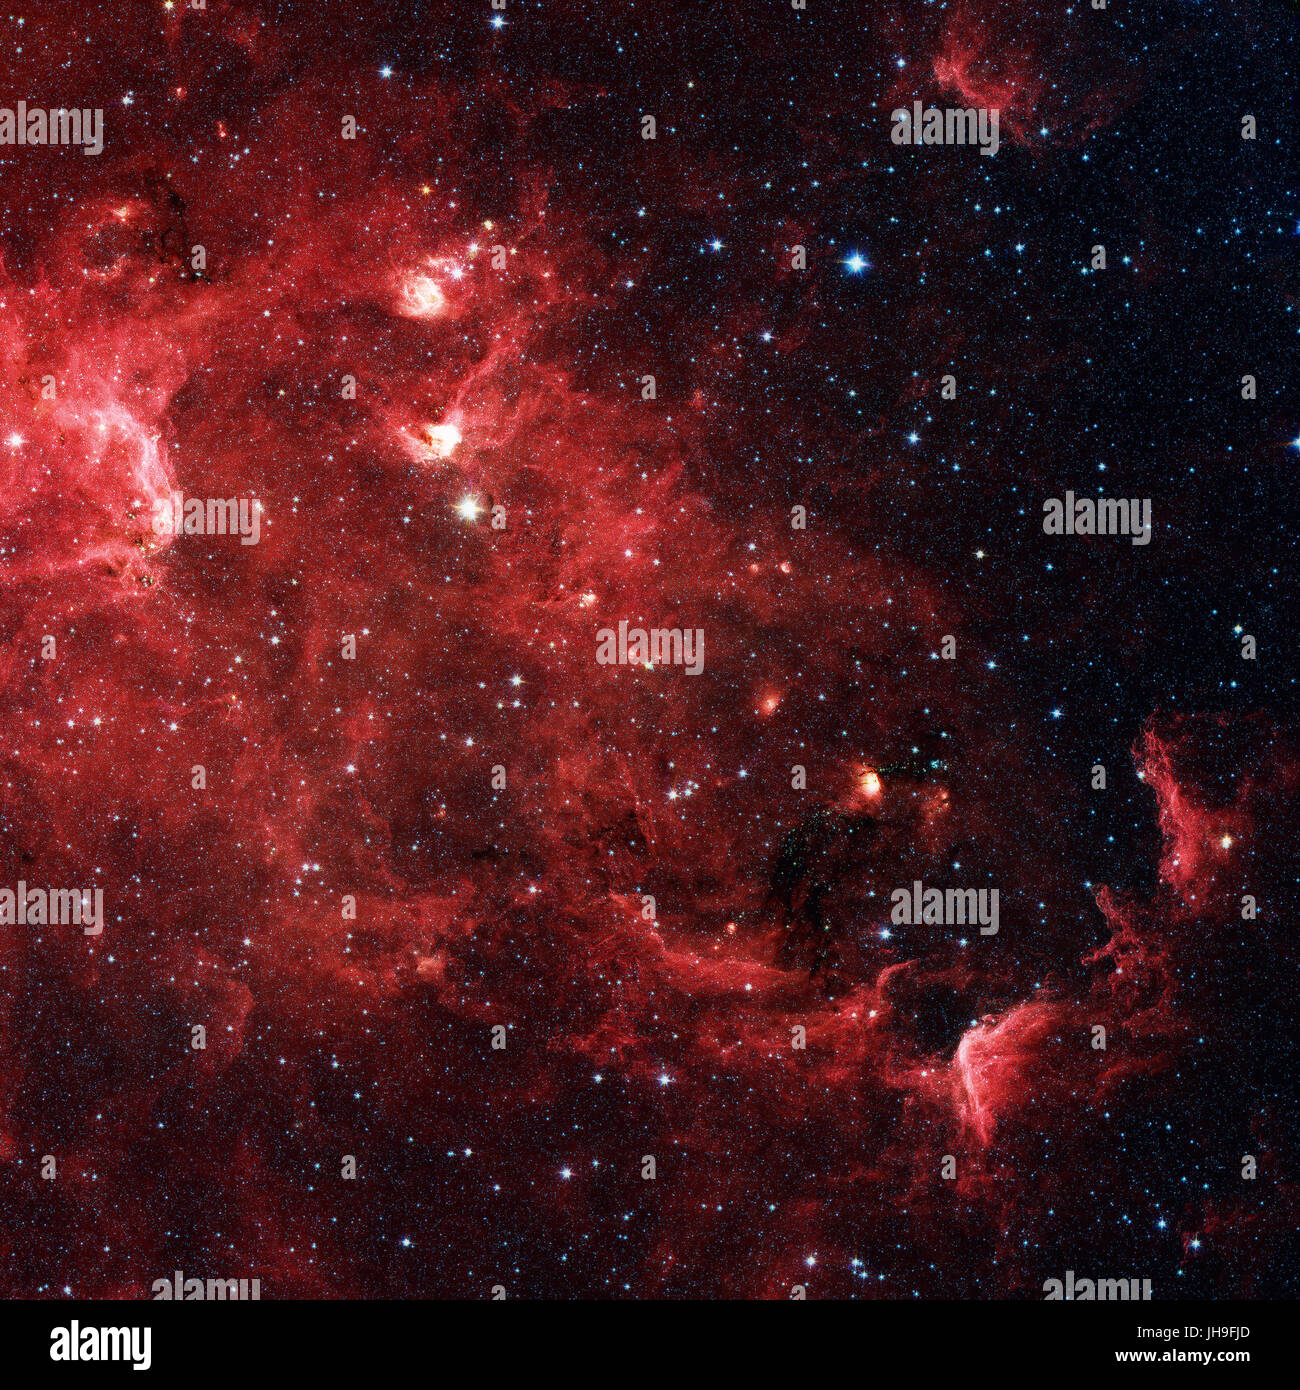 L'America del nord Nebula è una nebulosa a emissione nella costellazione del Cigno, vicino a Deneb. Vista a raggi infrarossi dalla NASA il telescopio spaziale Spitzer. Ritocco Foto Stock